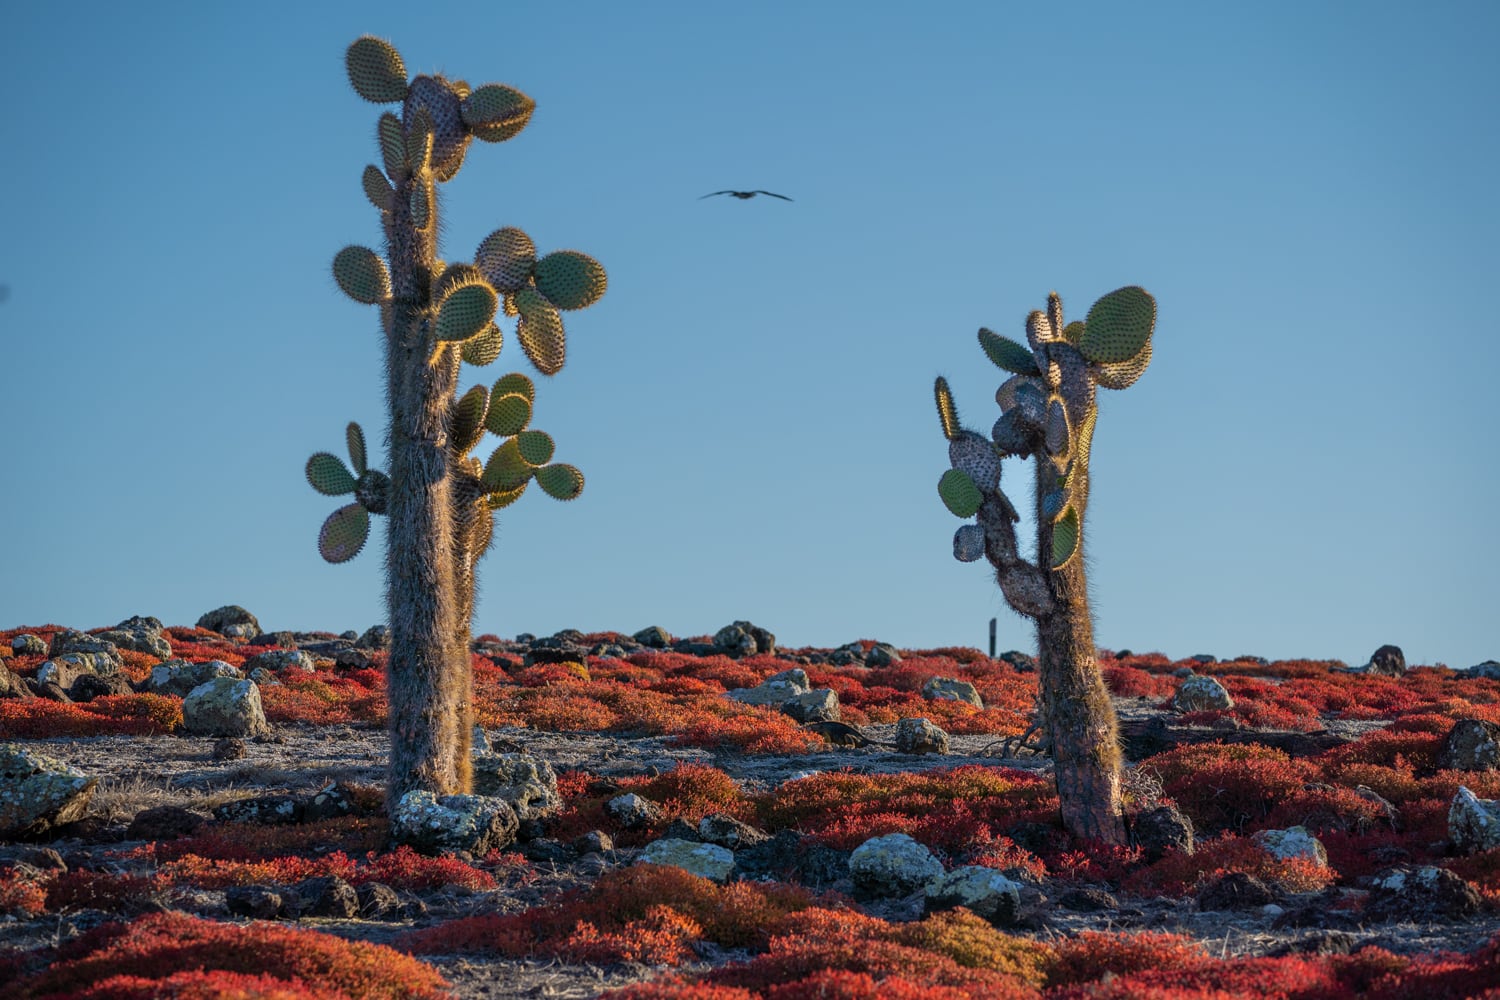 Galapagos cactus